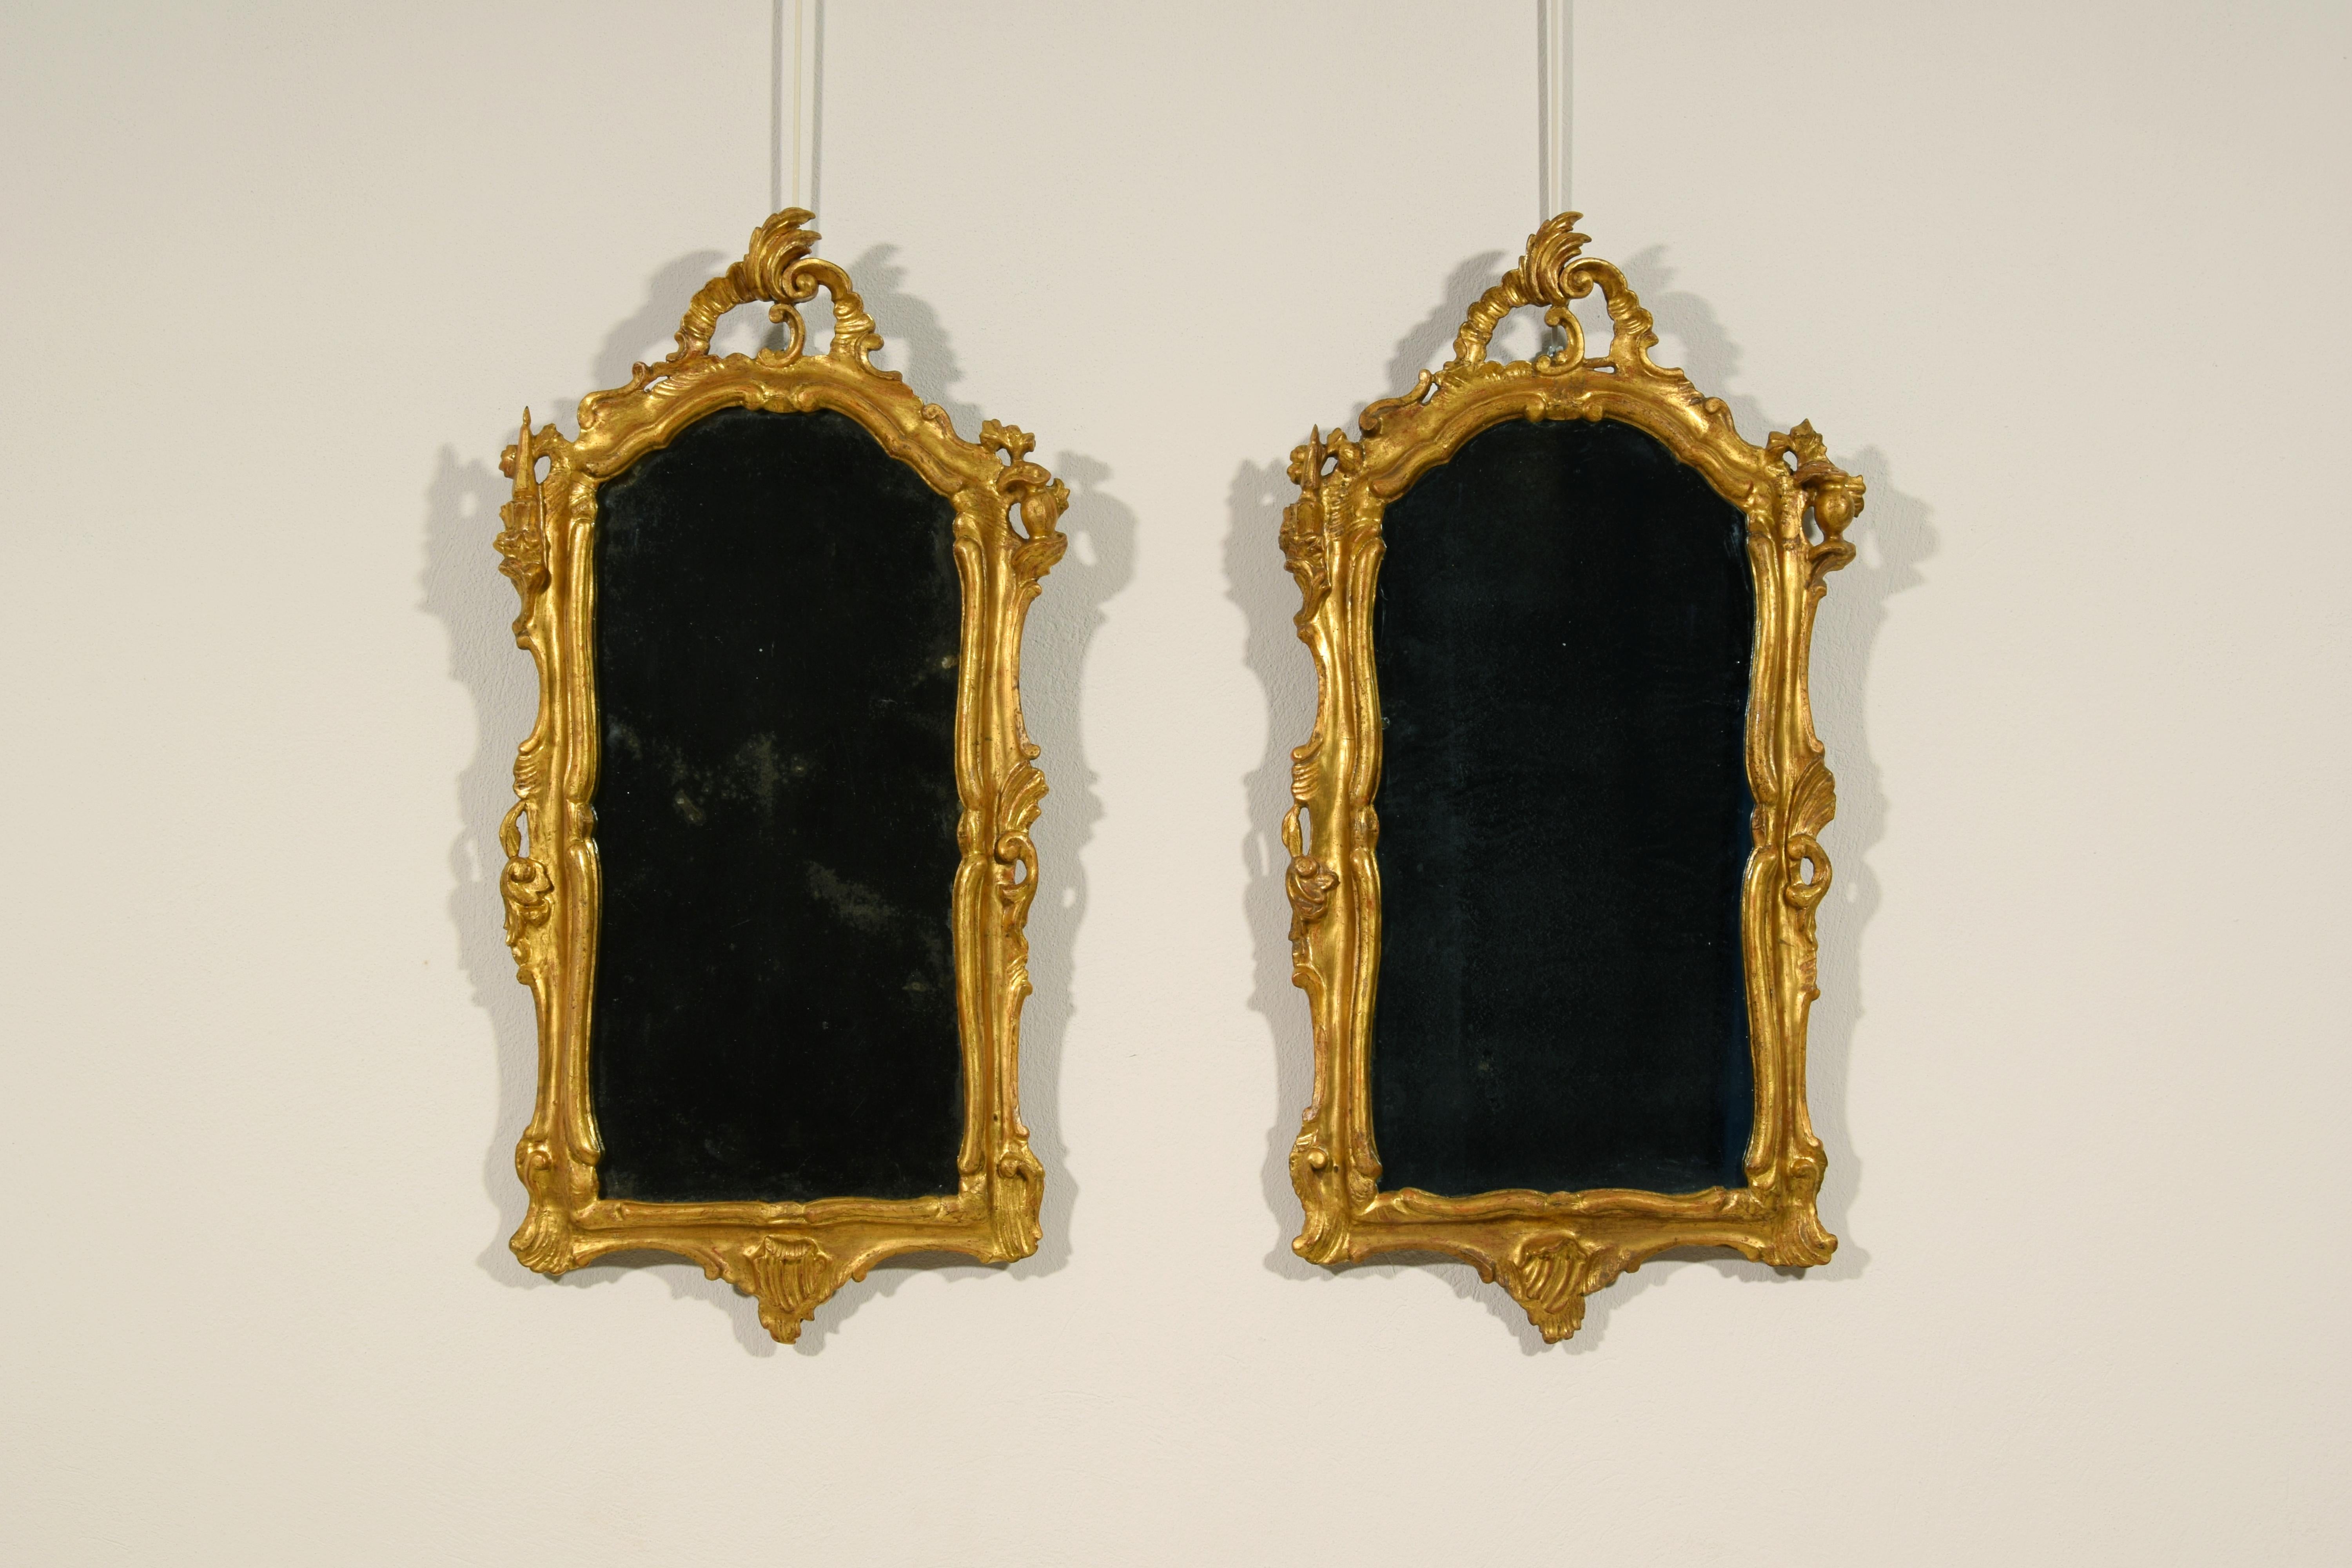 Seconde moitié du XVIIIe siècle, paire de miroirs vénitiens Louis XV en bois sculpté et doré

Cette belle paire de miroirs a été fabriquée à Venise dans la seconde moitié du XVIIIe siècle, à l'époque baroque.
Le cadre en bois doré est richement